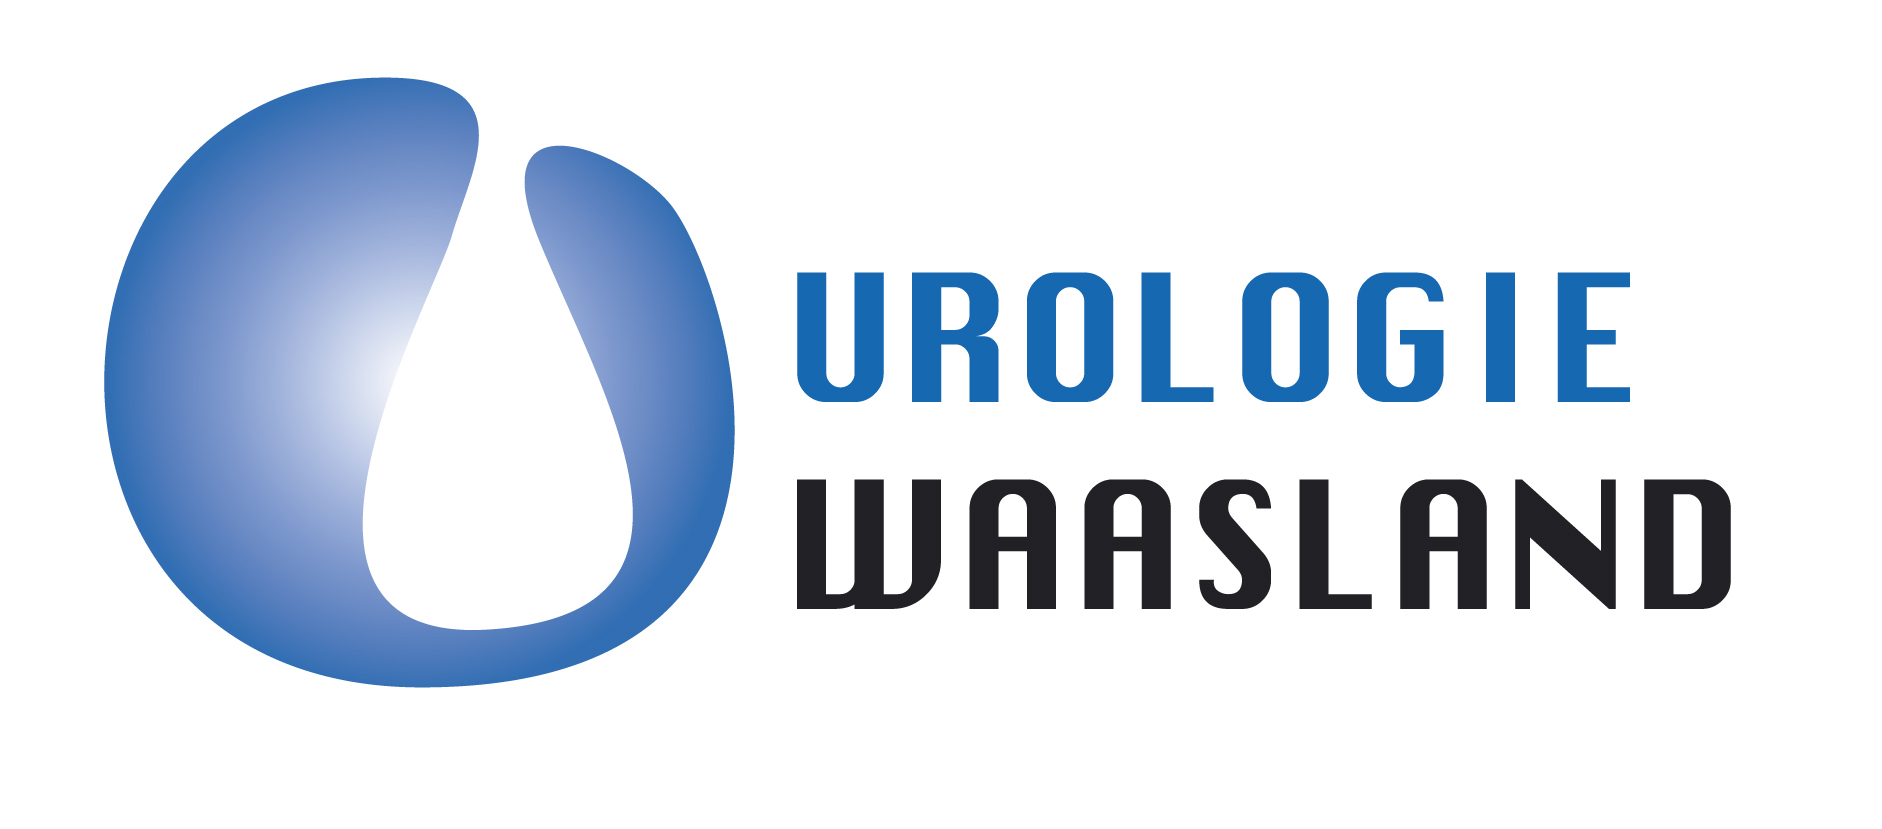 Maatschap Urologie